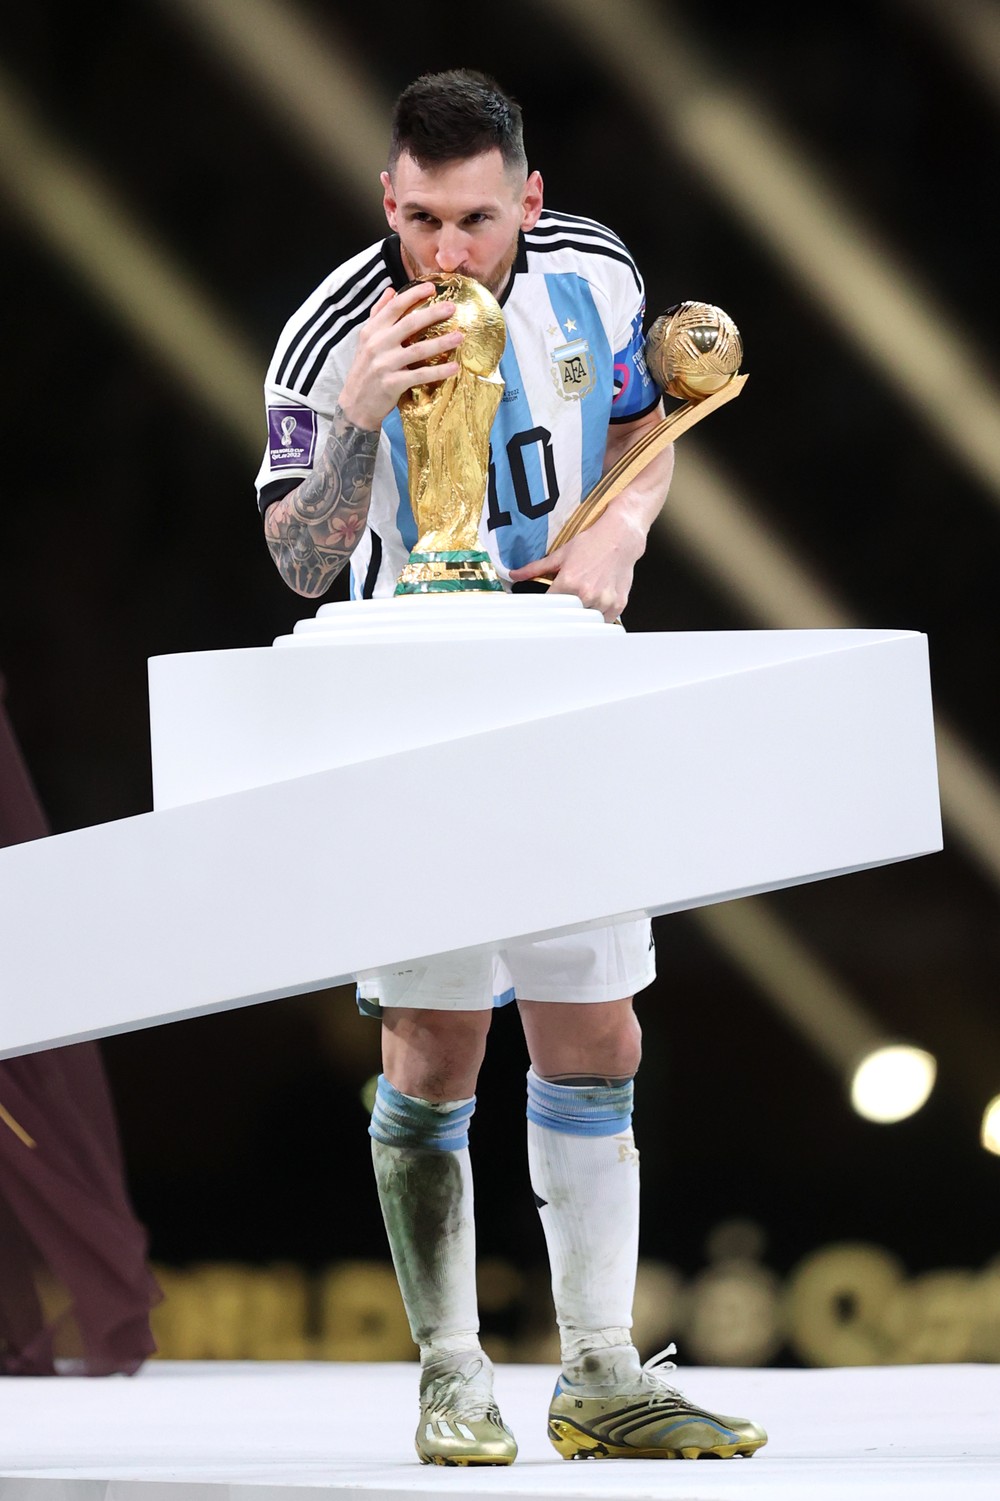 Xem ngay ảnh Messi nâng cúp vàng thành tích đỉnh cao của một cầu thủ bóng đá. Nhìn chàng tiền đạo lừng danh của Argentina tràn đầy hạnh phúc và kiêu hãnh cầm trên tay chiếc cúp vô địch thật là phấn khích.